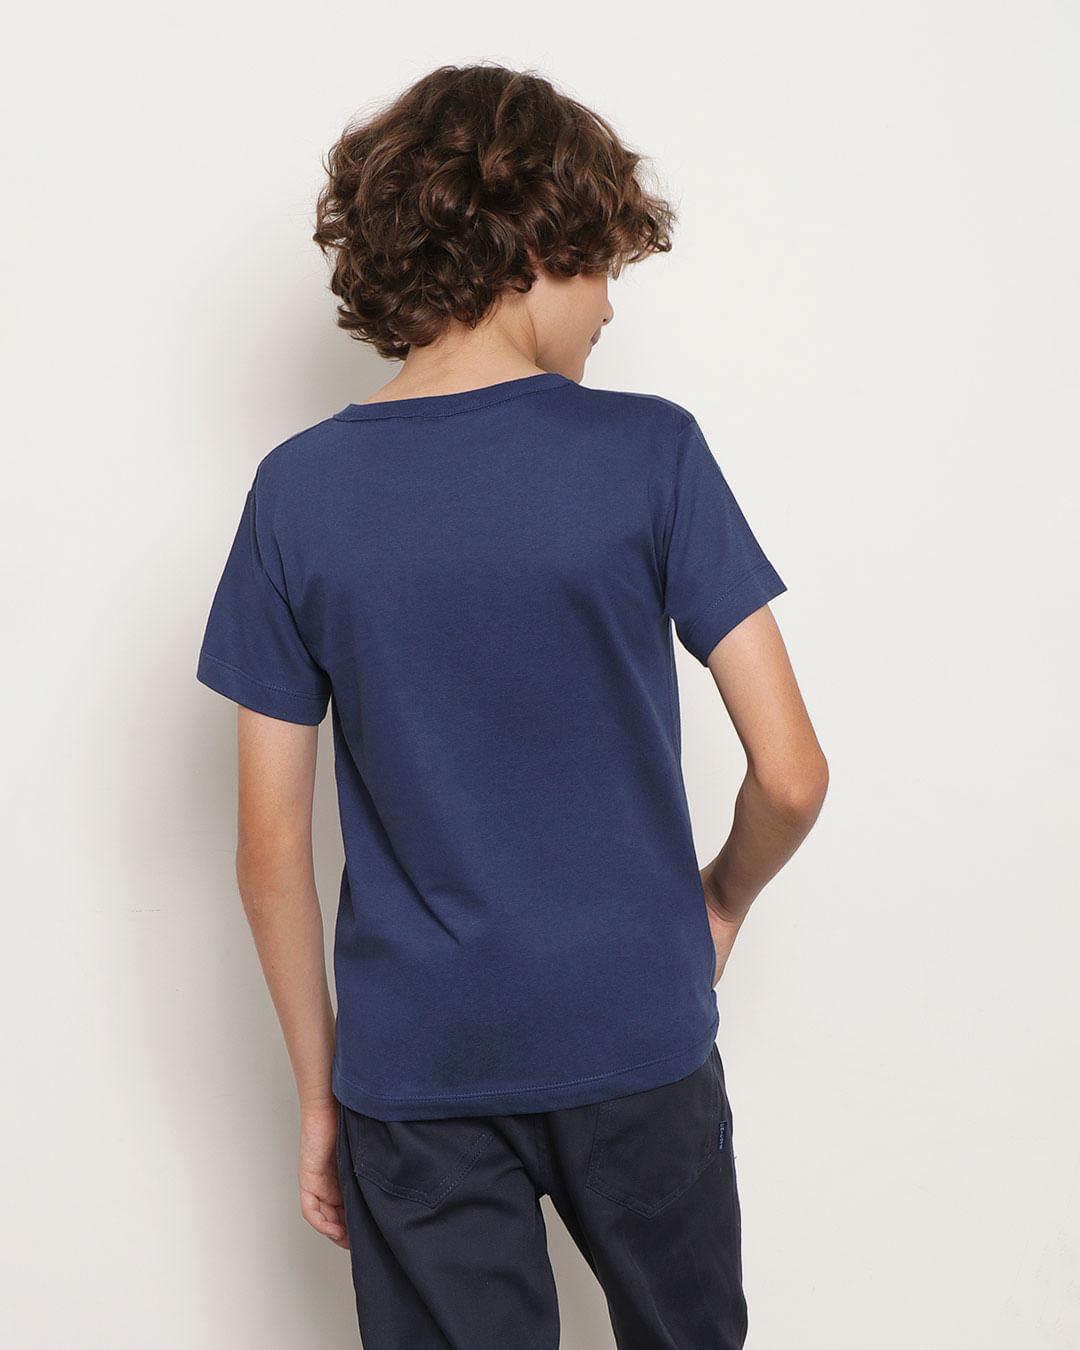 camiseta-infantil-estampa-tropical-azul-marinho-14104020007